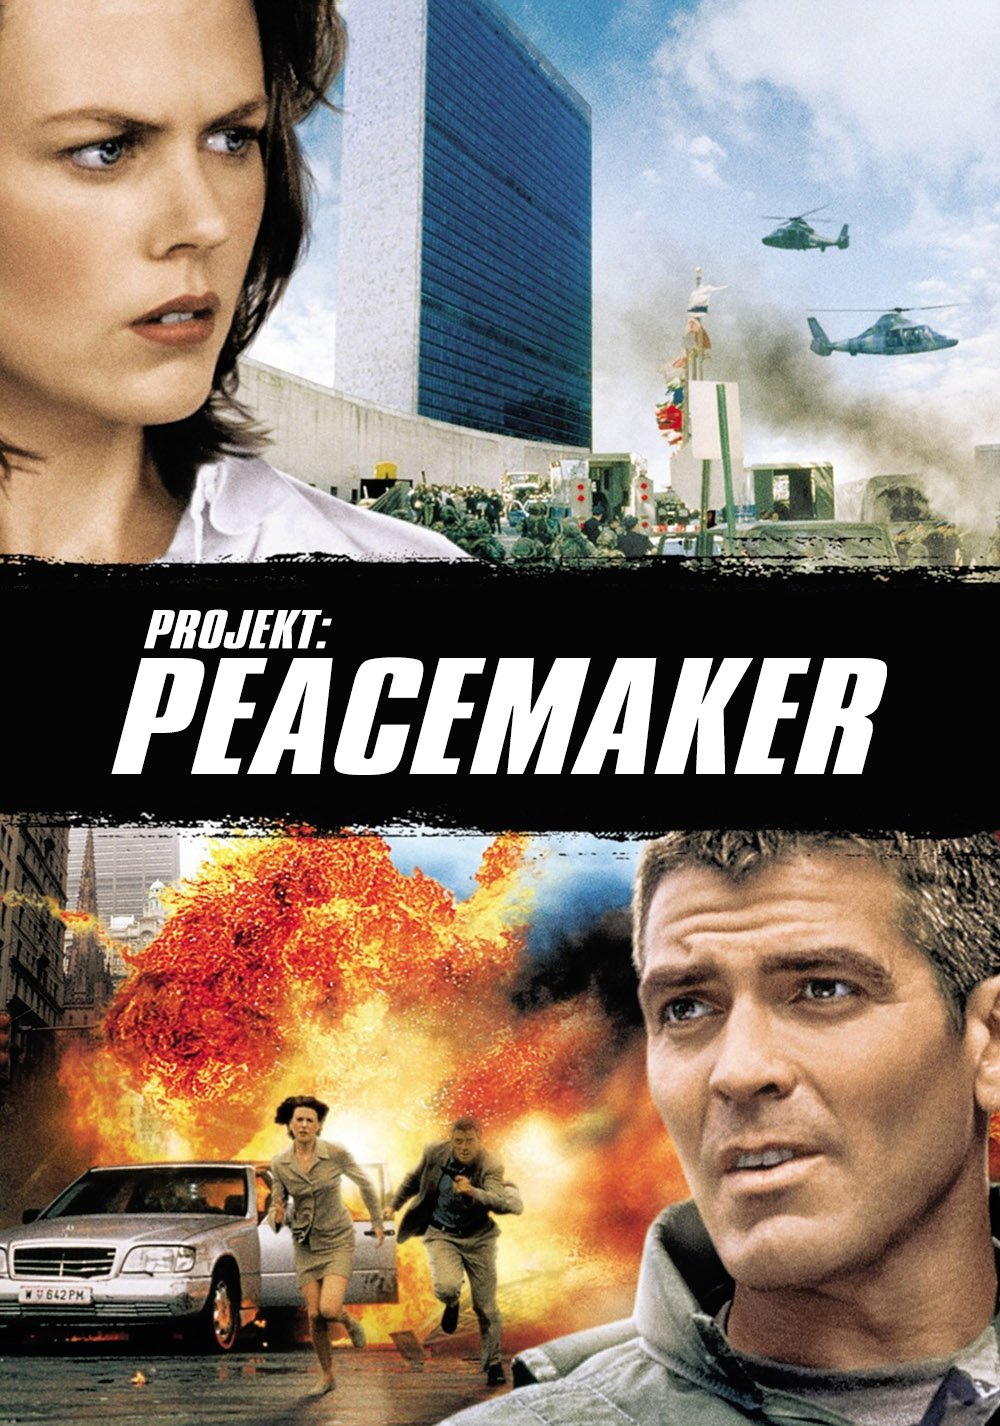 The Peacemaker / Ο Ειρηνοποιός (1997)